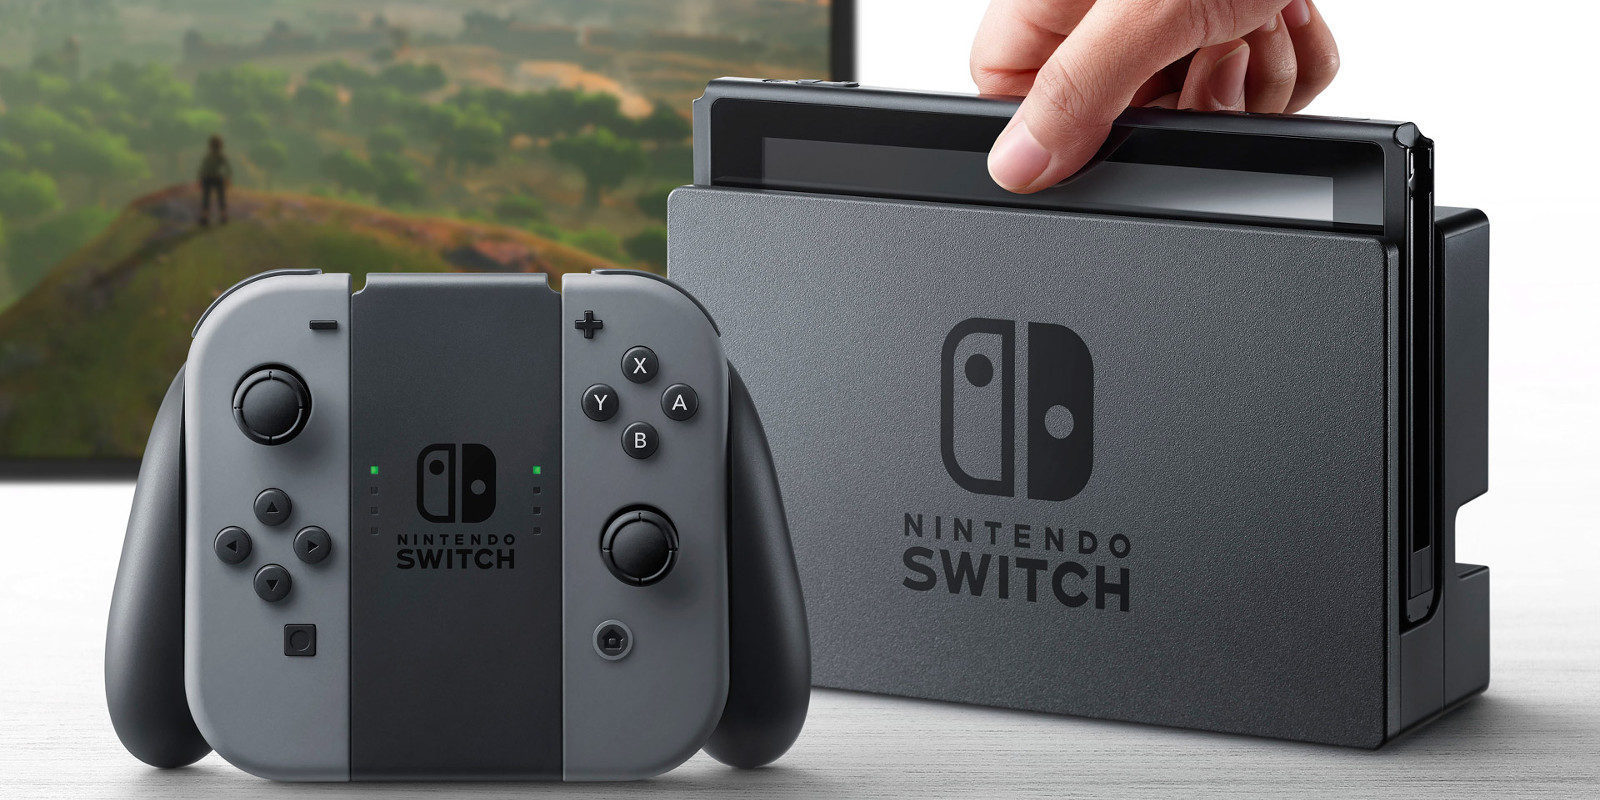 Nintendo Switch: 15 juegos confirmados para marzo 2017